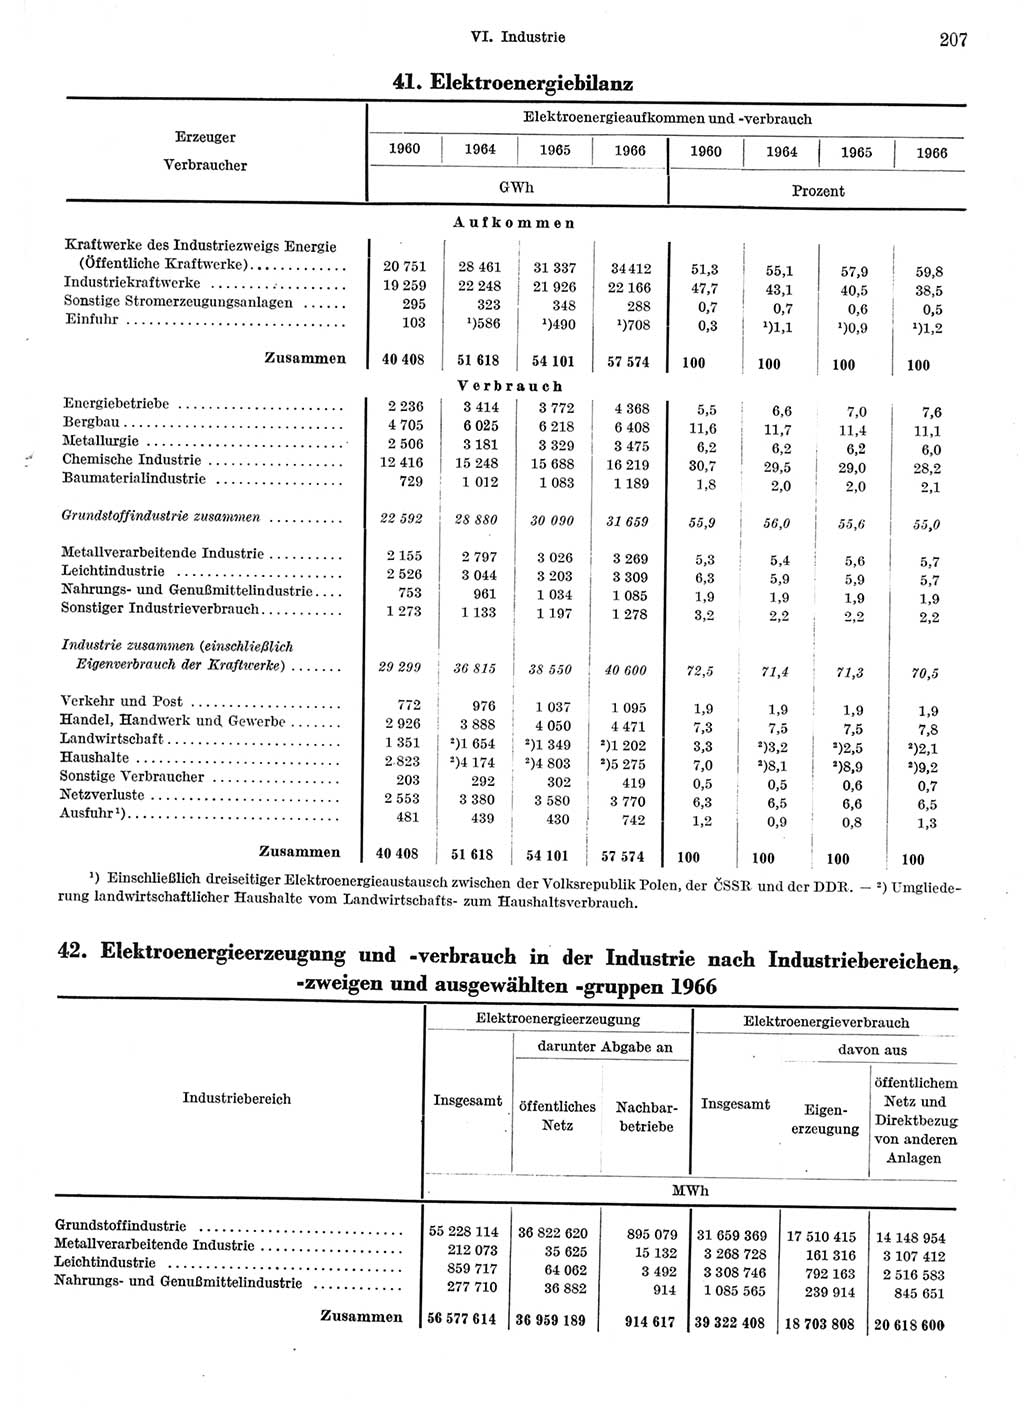 Statistisches Jahrbuch der Deutschen Demokratischen Republik (DDR) 1967, Seite 207 (Stat. Jb. DDR 1967, S. 207)